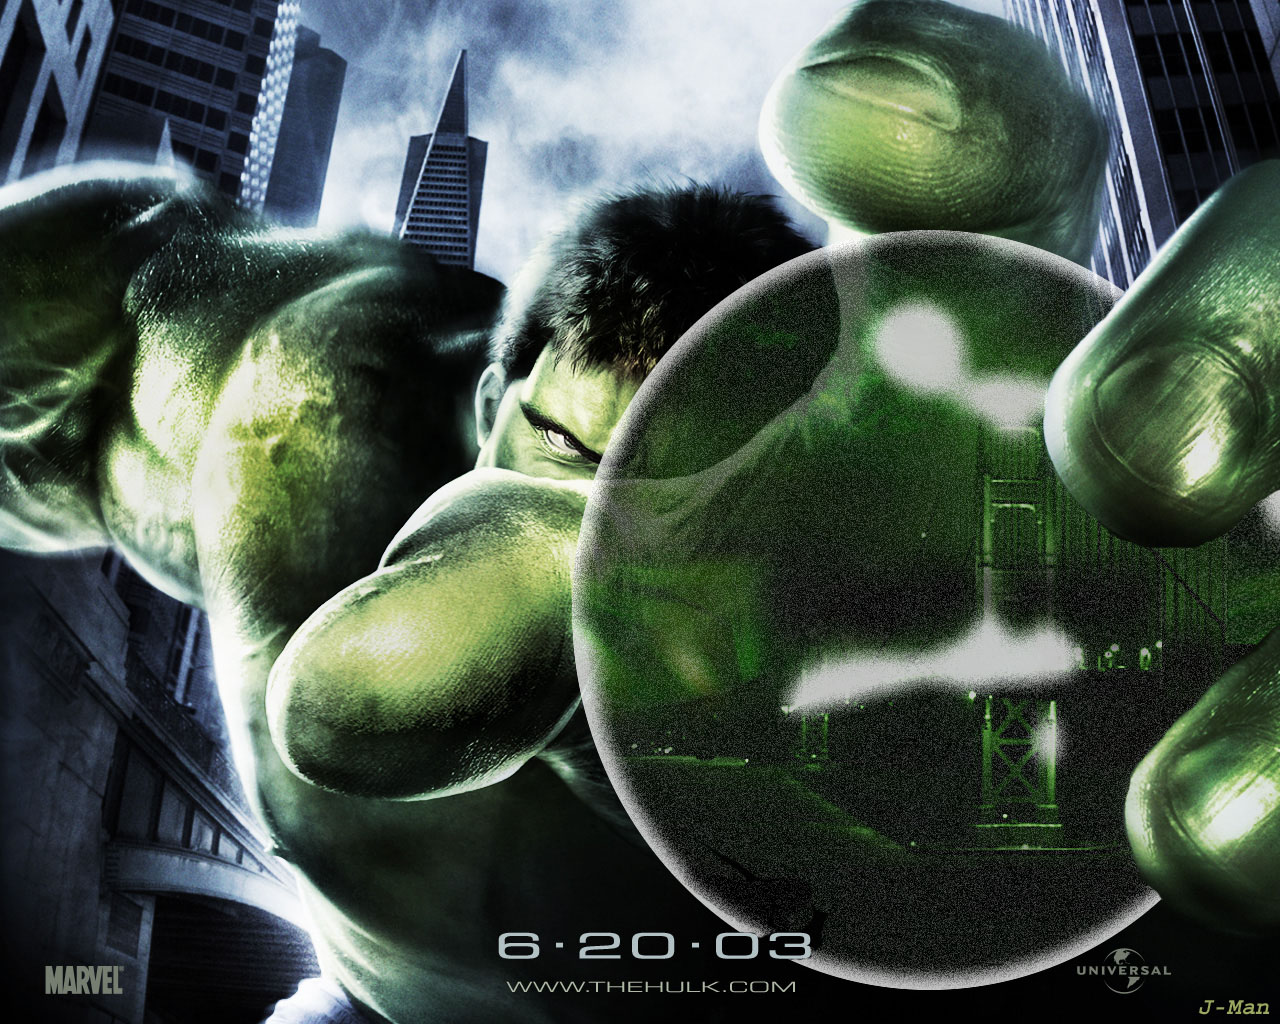 Download HQ The Hulk wallpaper / Movies / 1280x1024